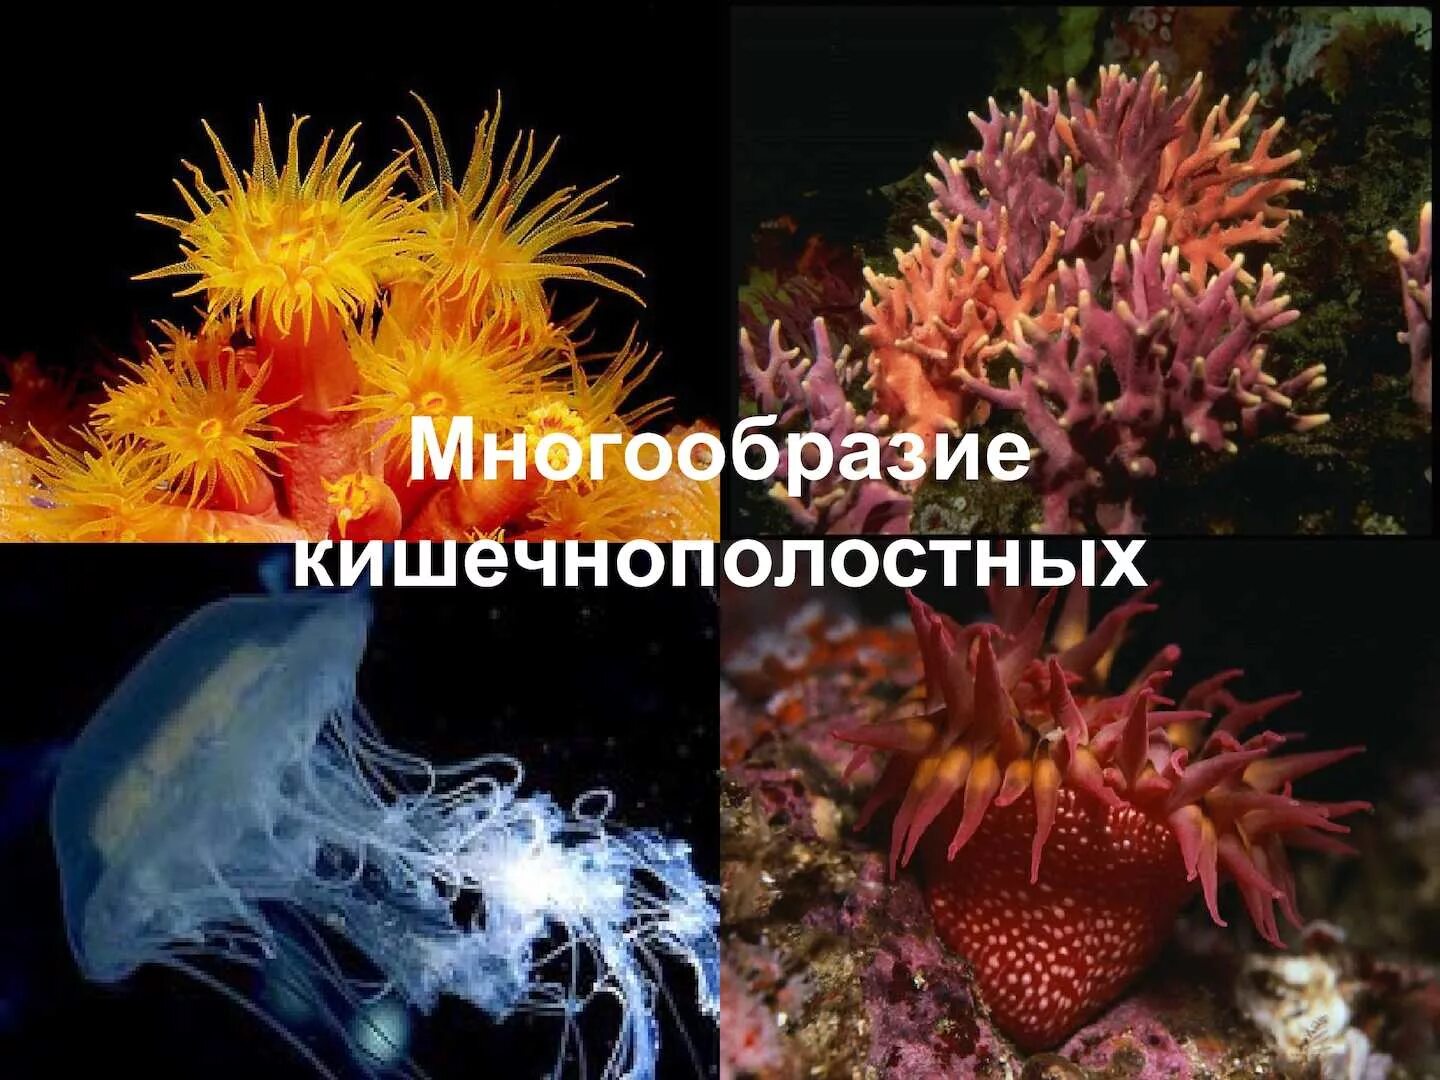 Многообразие кишечнополостных. Шестилучевые коралловые полипы. Разнообразие кишечнополостных. Разнообразие морских кишечнополостных.